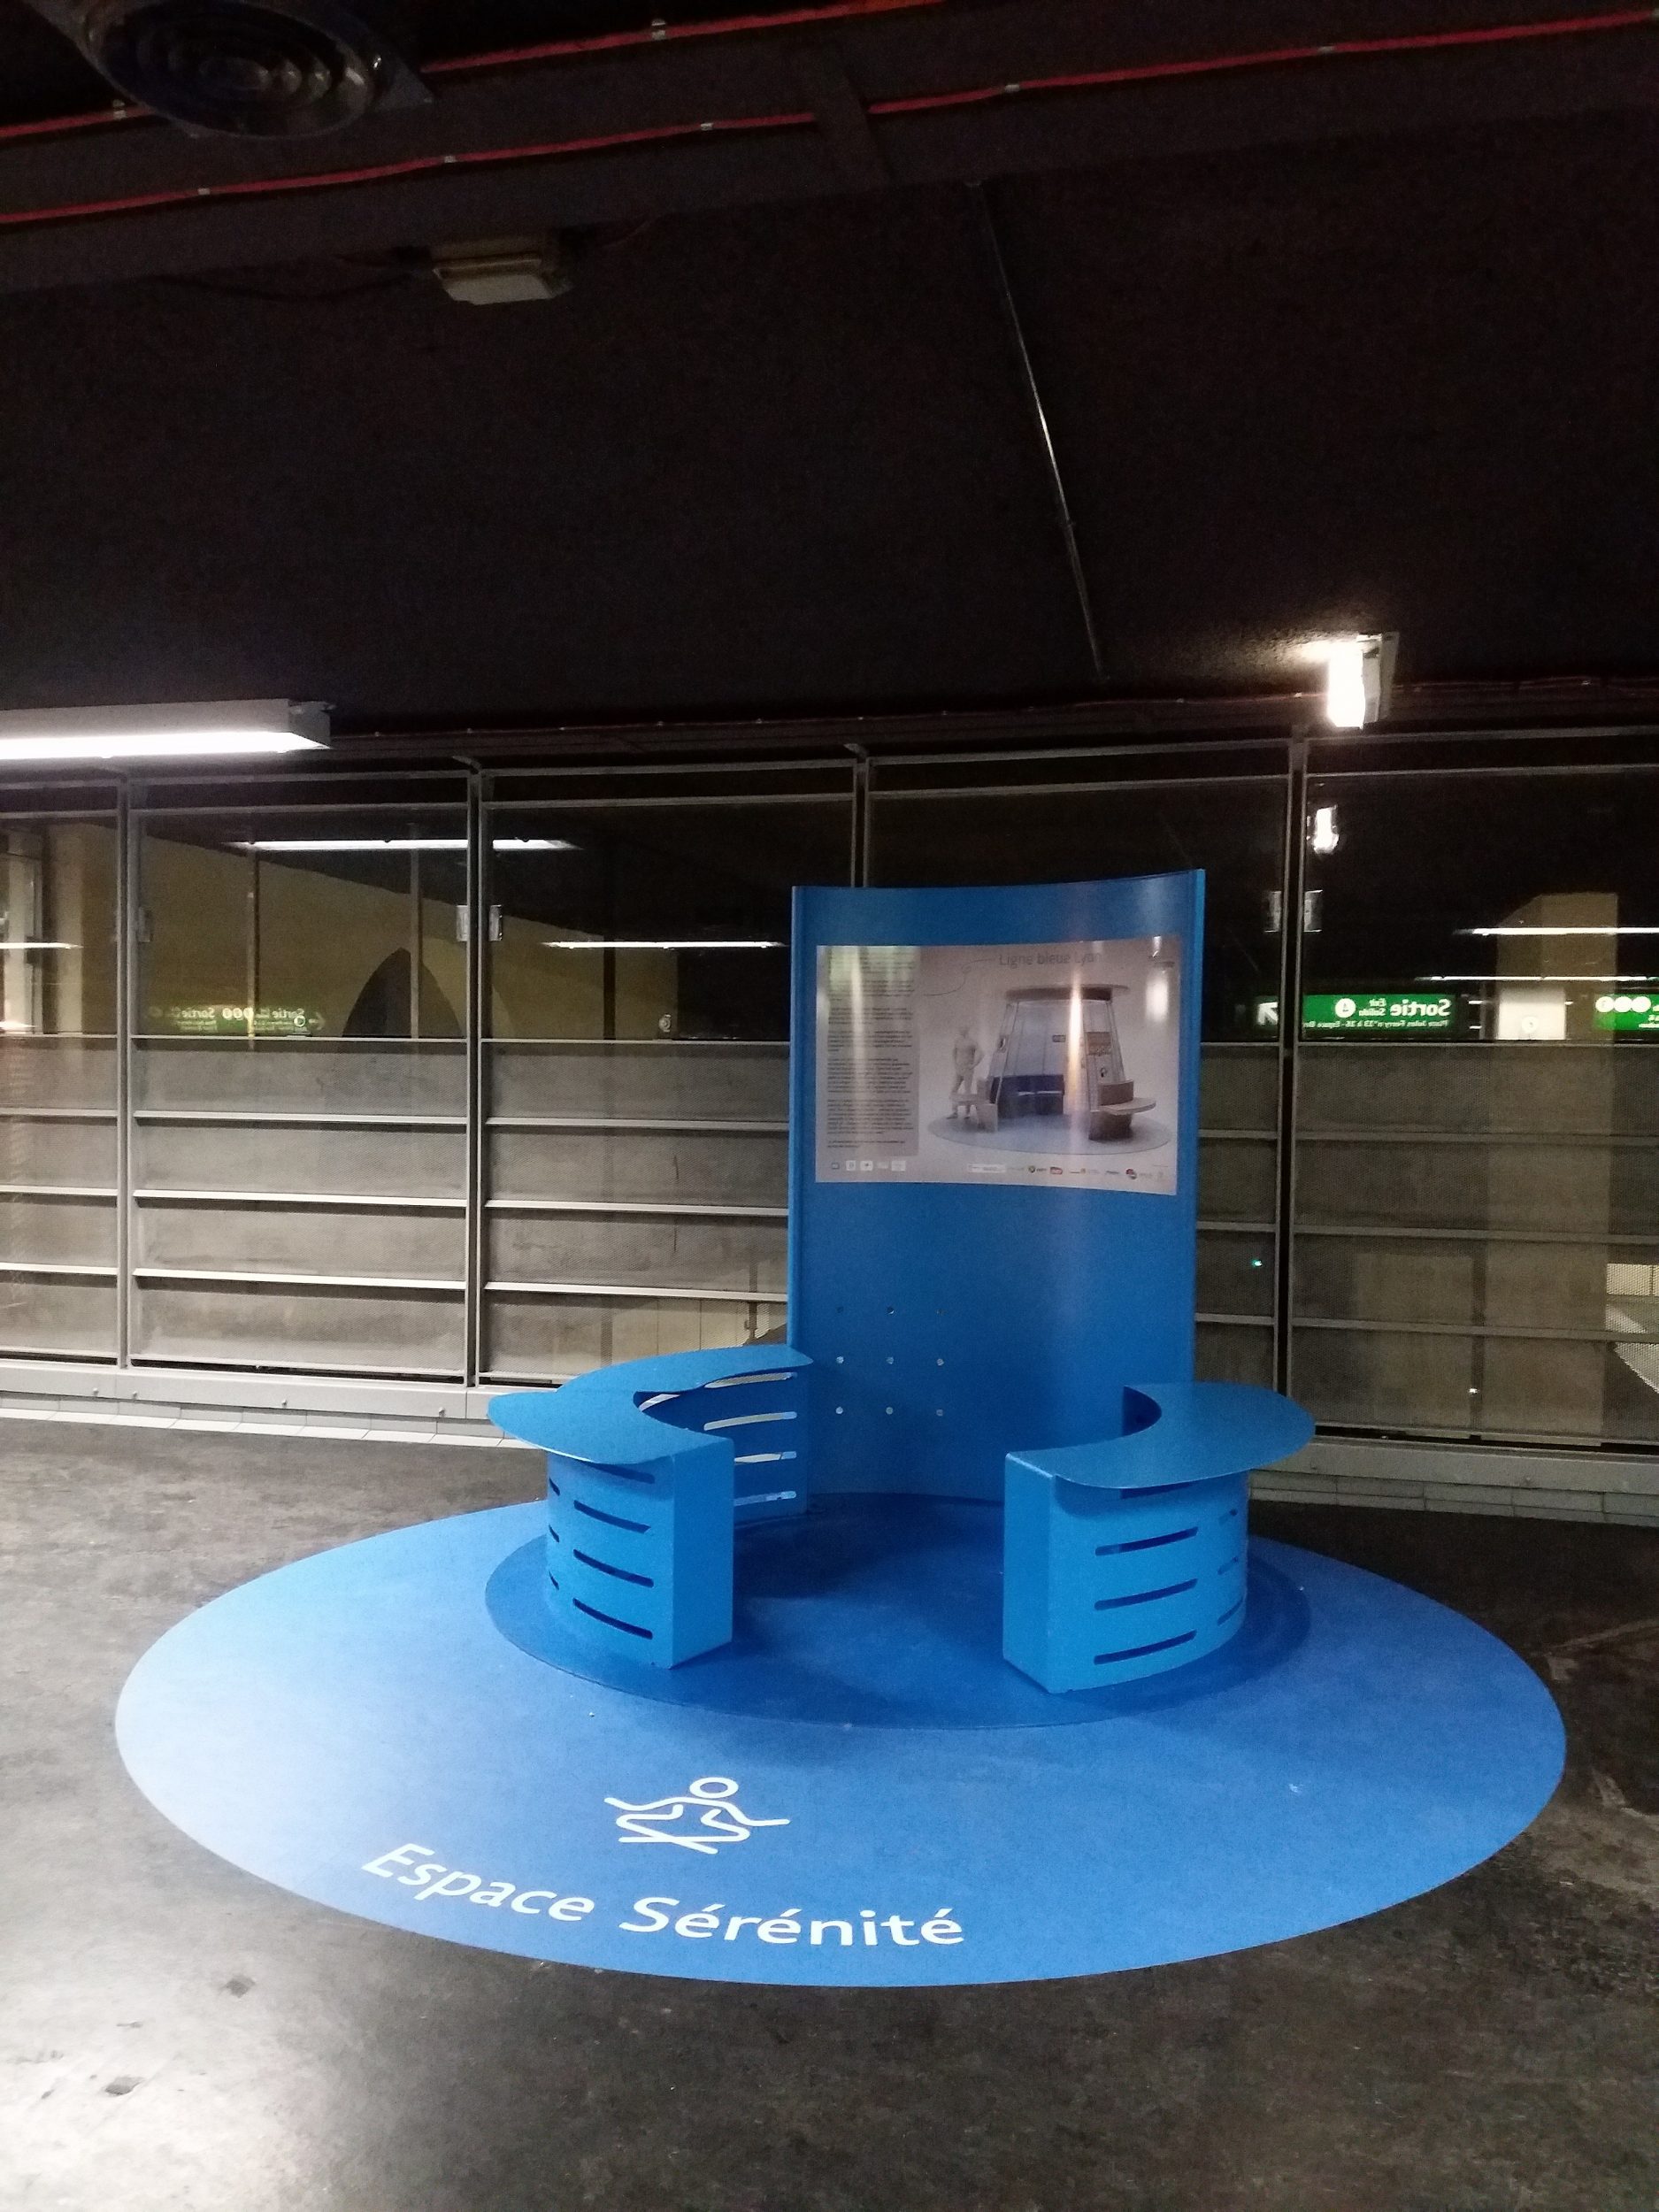 Un banc en cercle avec une signalétique pour indiquer qu'il s'agit d'un espace de sérénité dans dédié au dispositif de la ligne bleue pour aider les personnes atteintes d'autisme